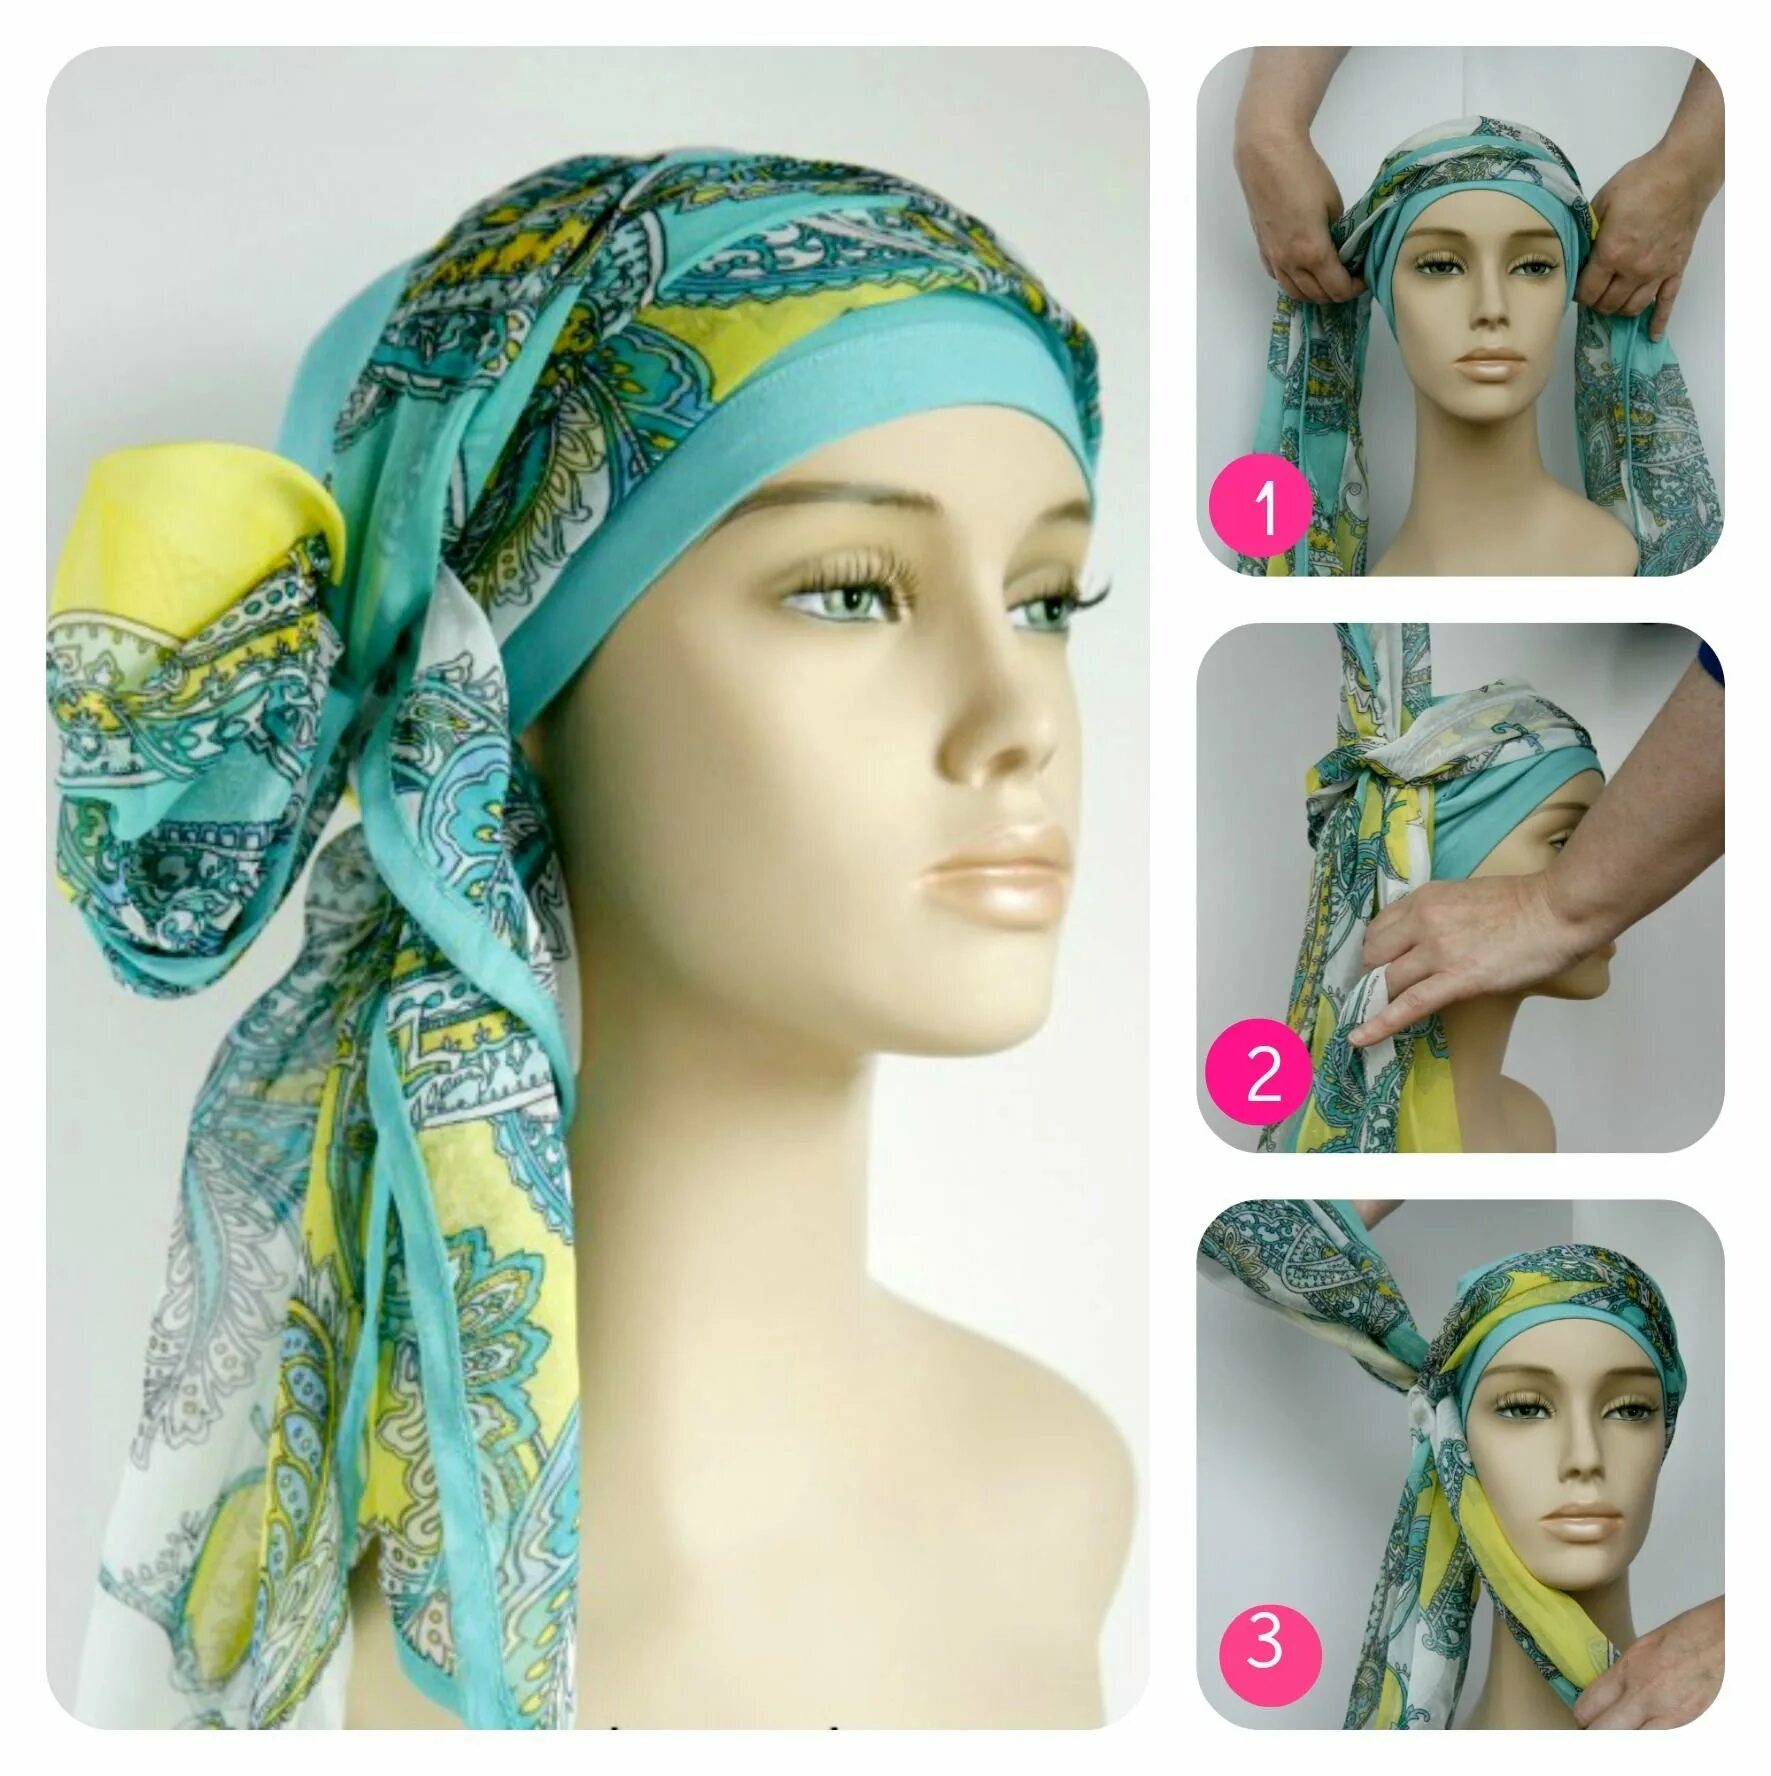 Летний платок на голову. Красивые платки на голову. Красиво повязать платок на голову. Готовые платки на голову. Как завязывать шарф на голову красиво весной